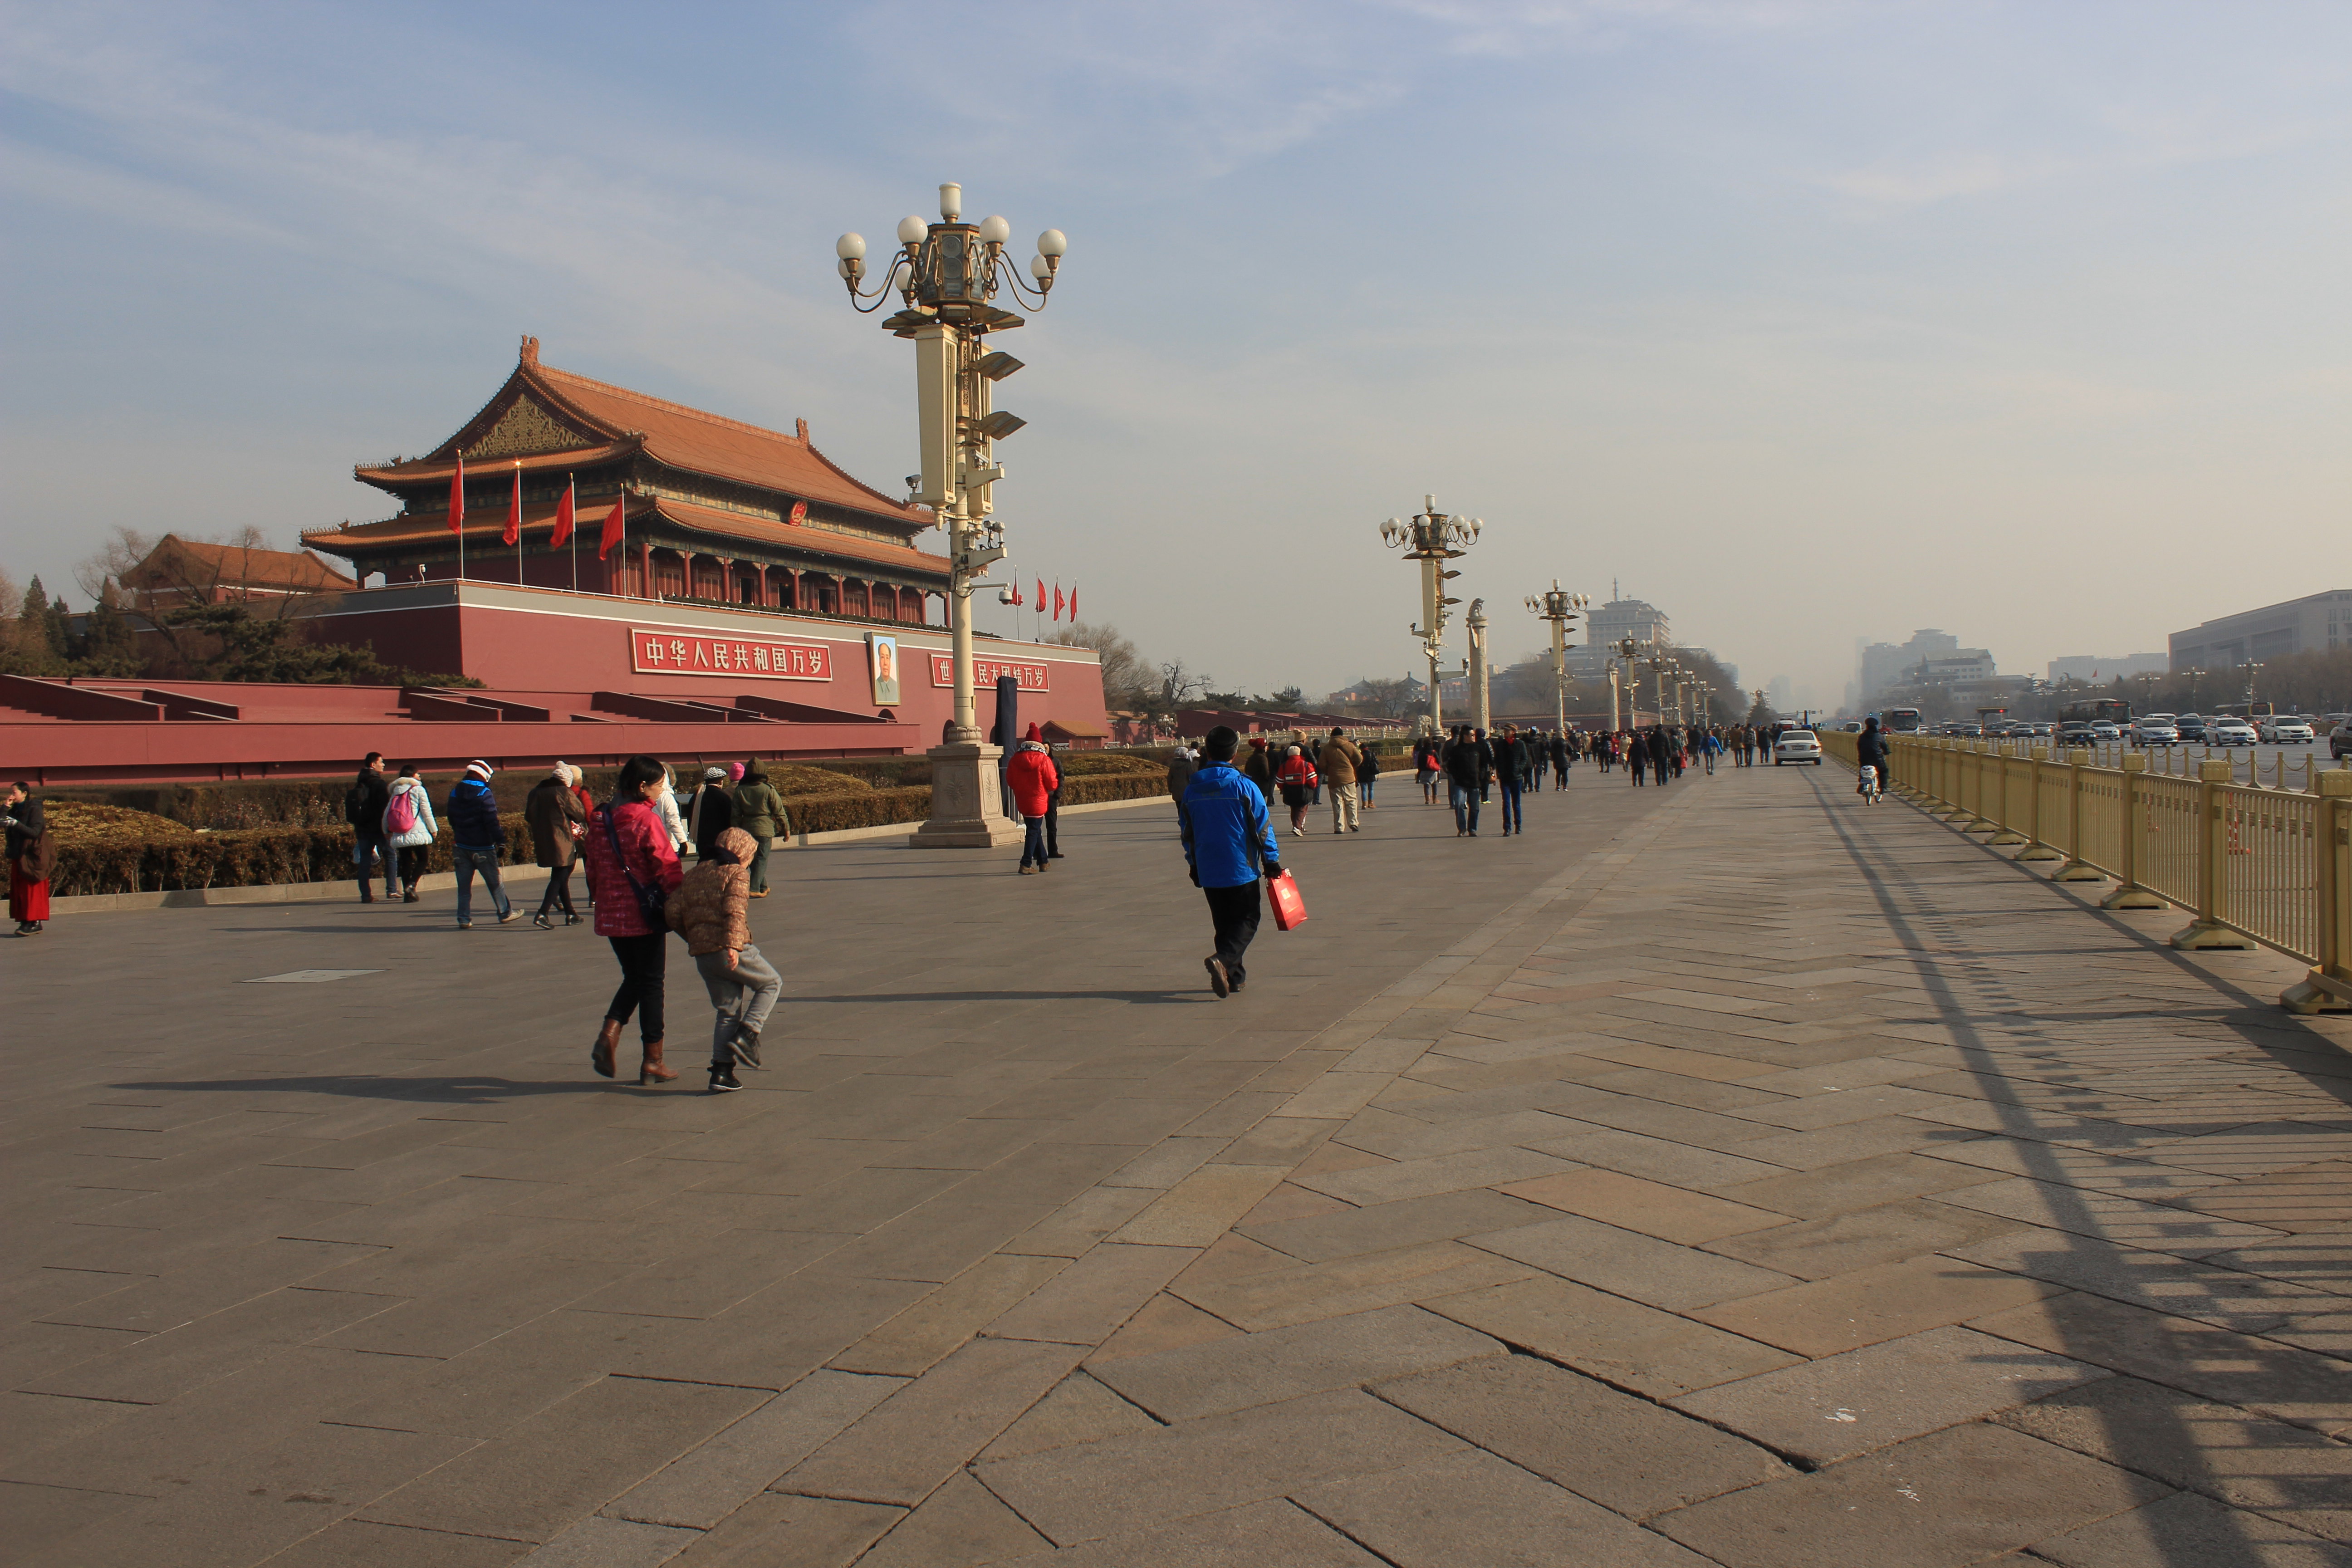 【携程攻略】北京天安门城楼景点,天安门城楼是天安门广场，乃至整个北京的标志之一吧。每个来北京的人…